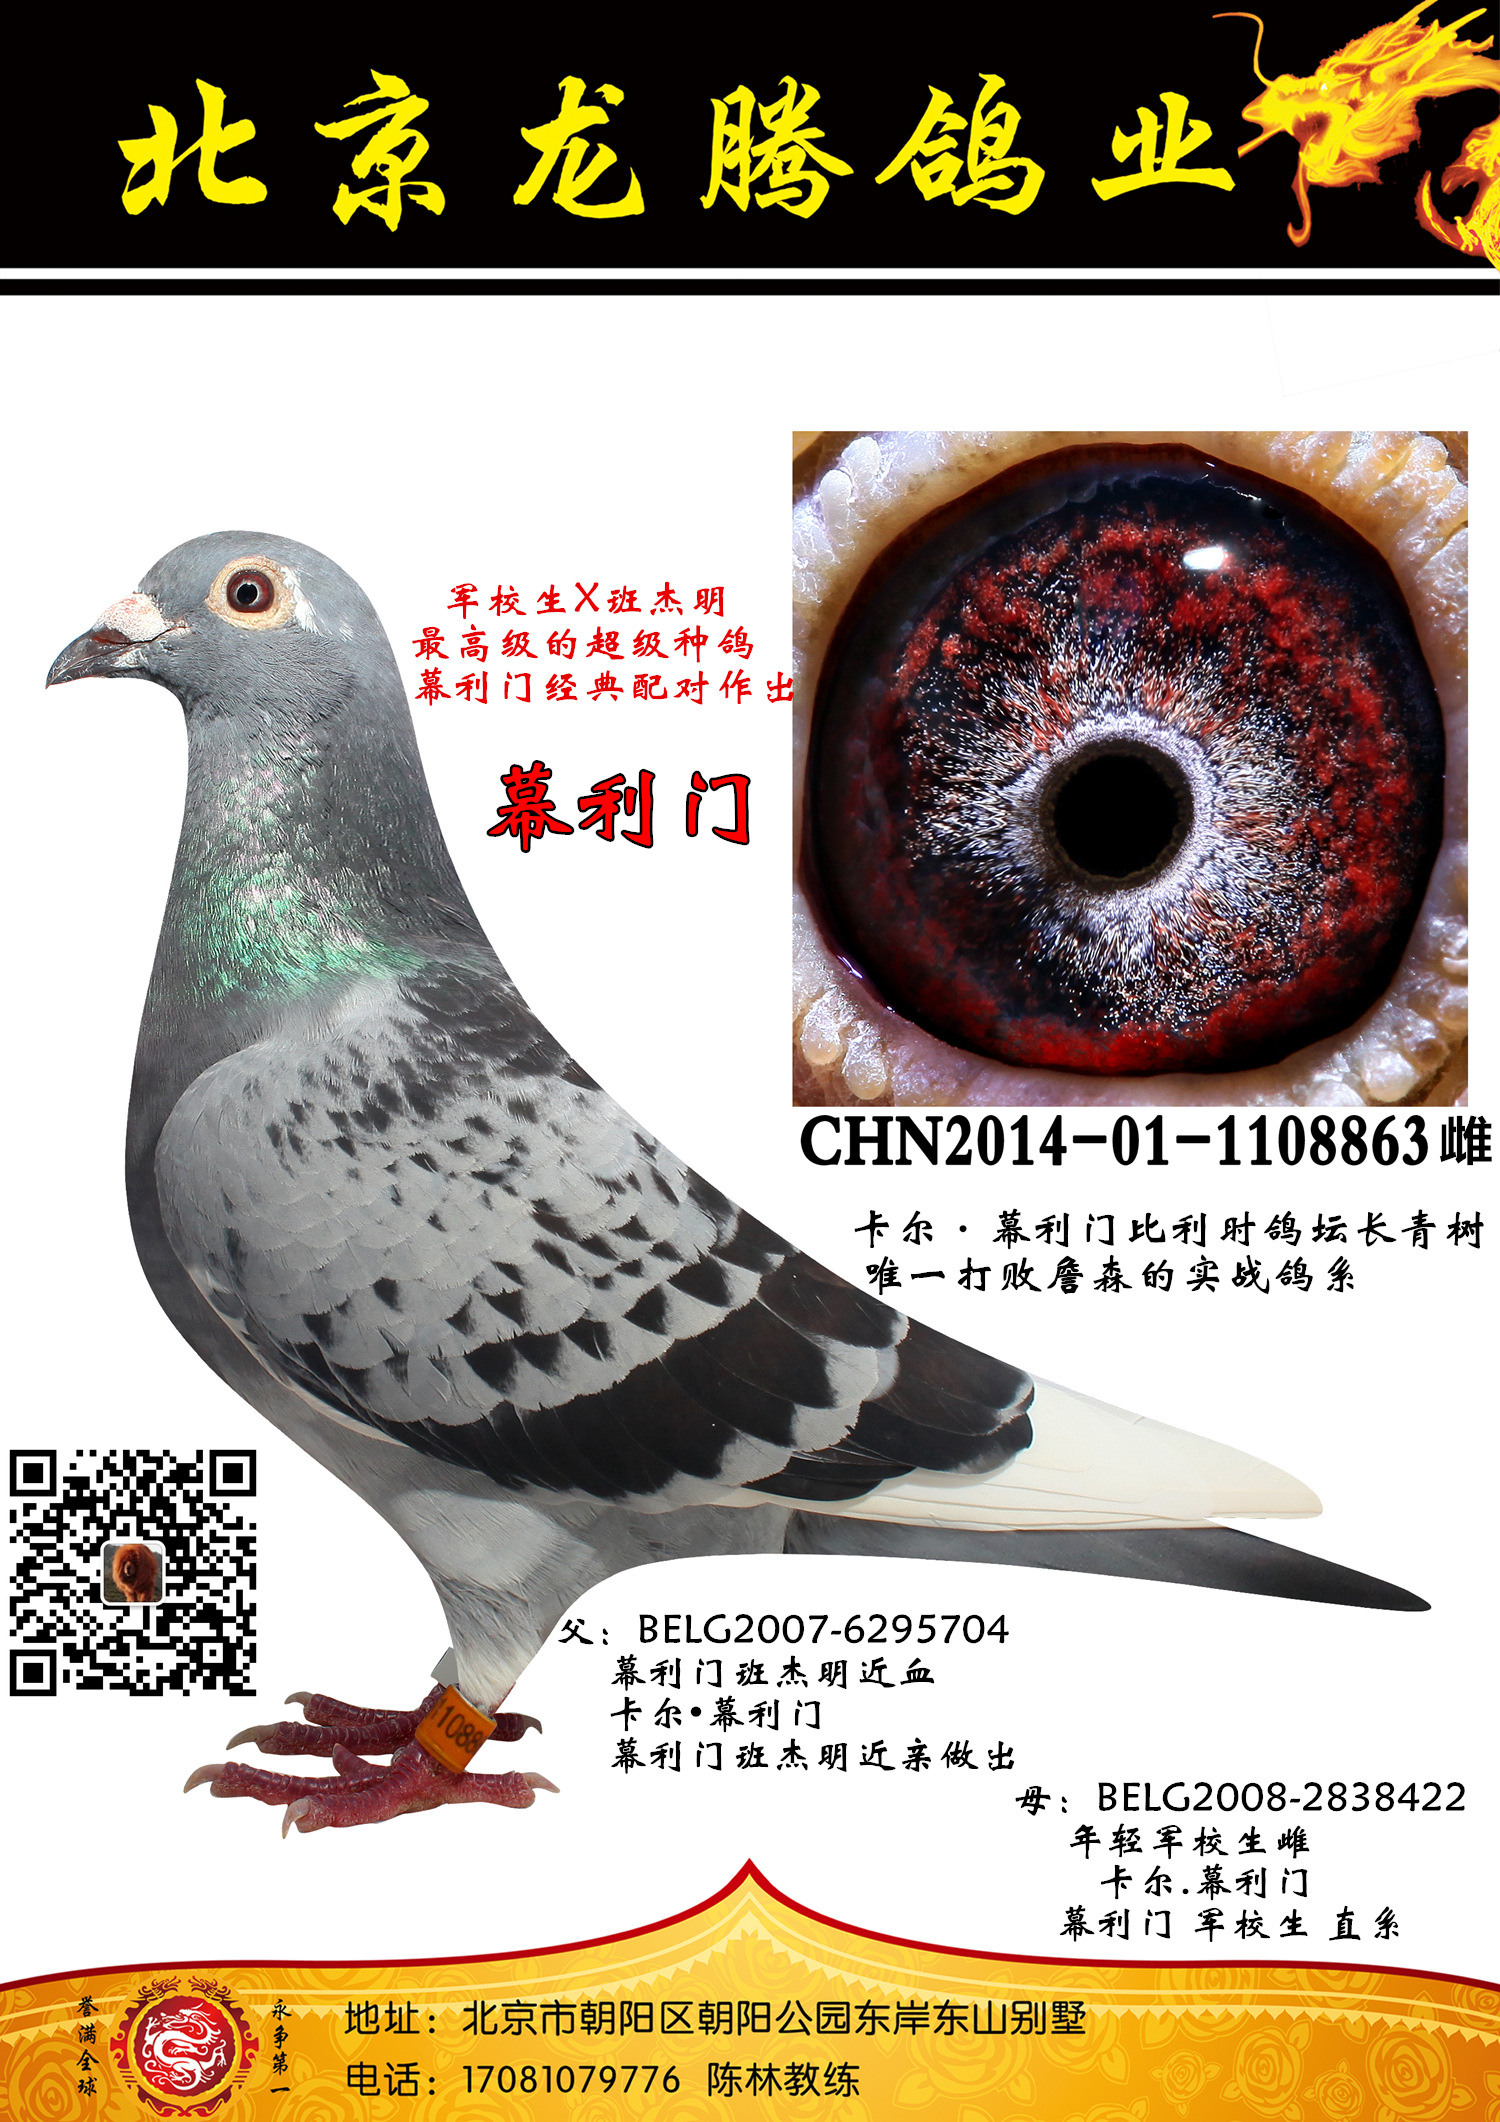 分享北京龙腾鸽业精品种鸽